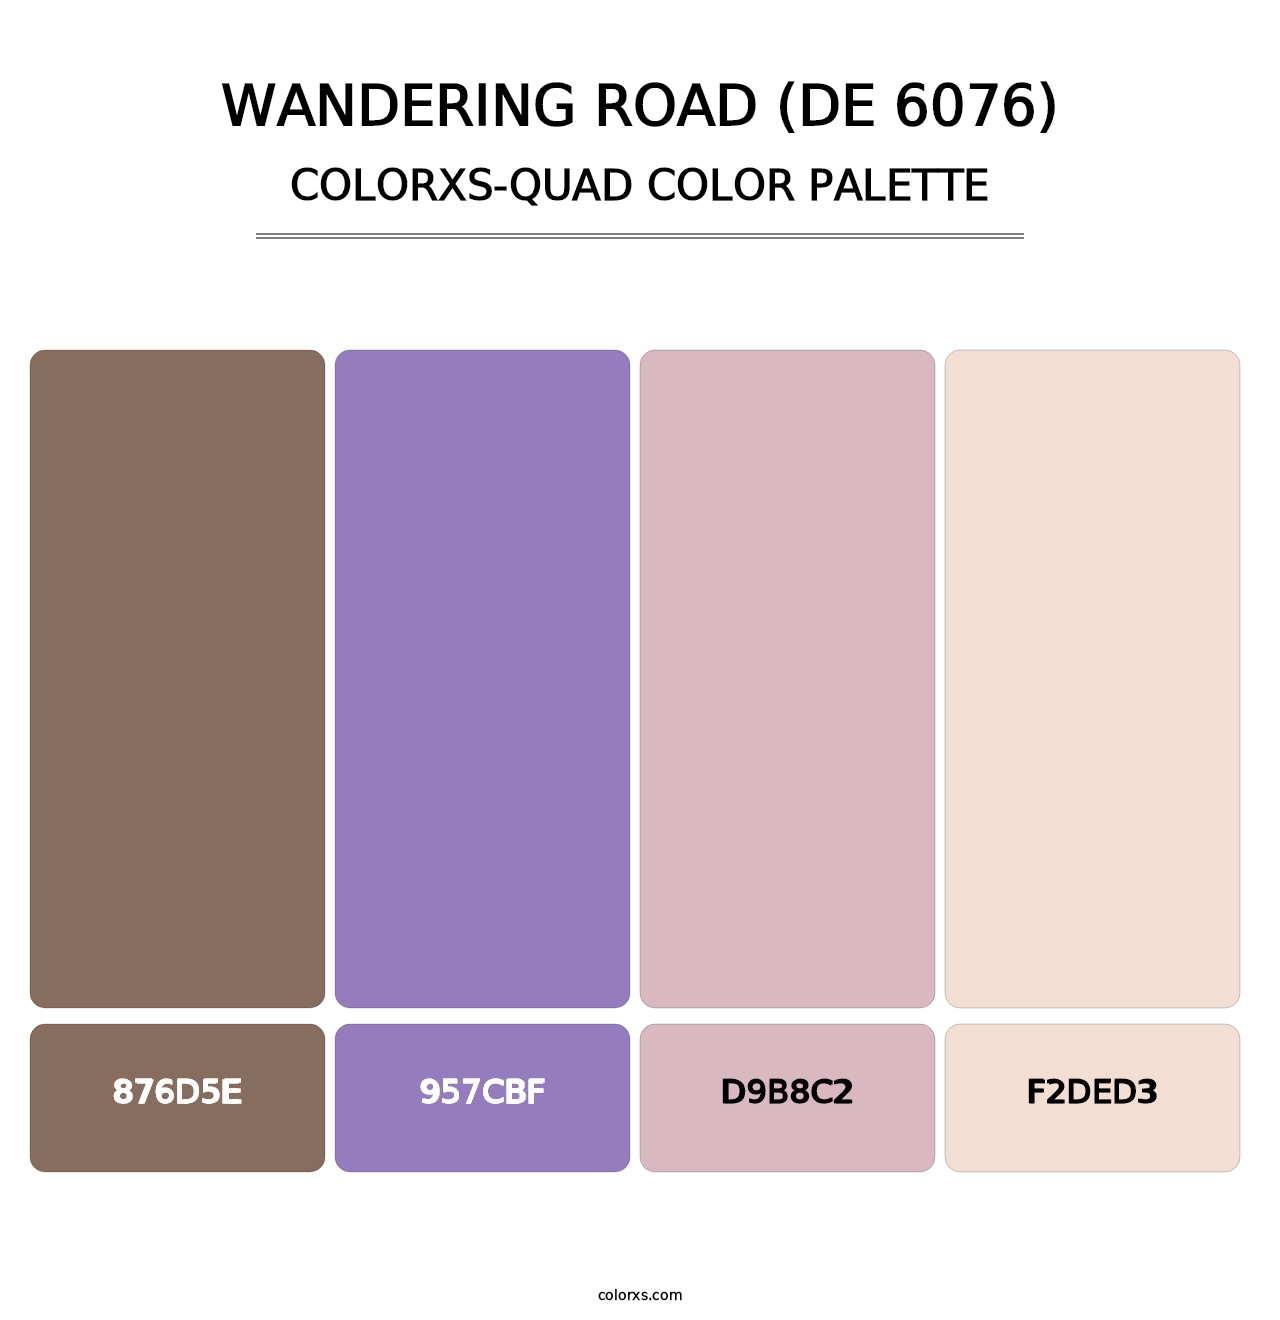 Wandering Road (DE 6076) - Colorxs Quad Palette